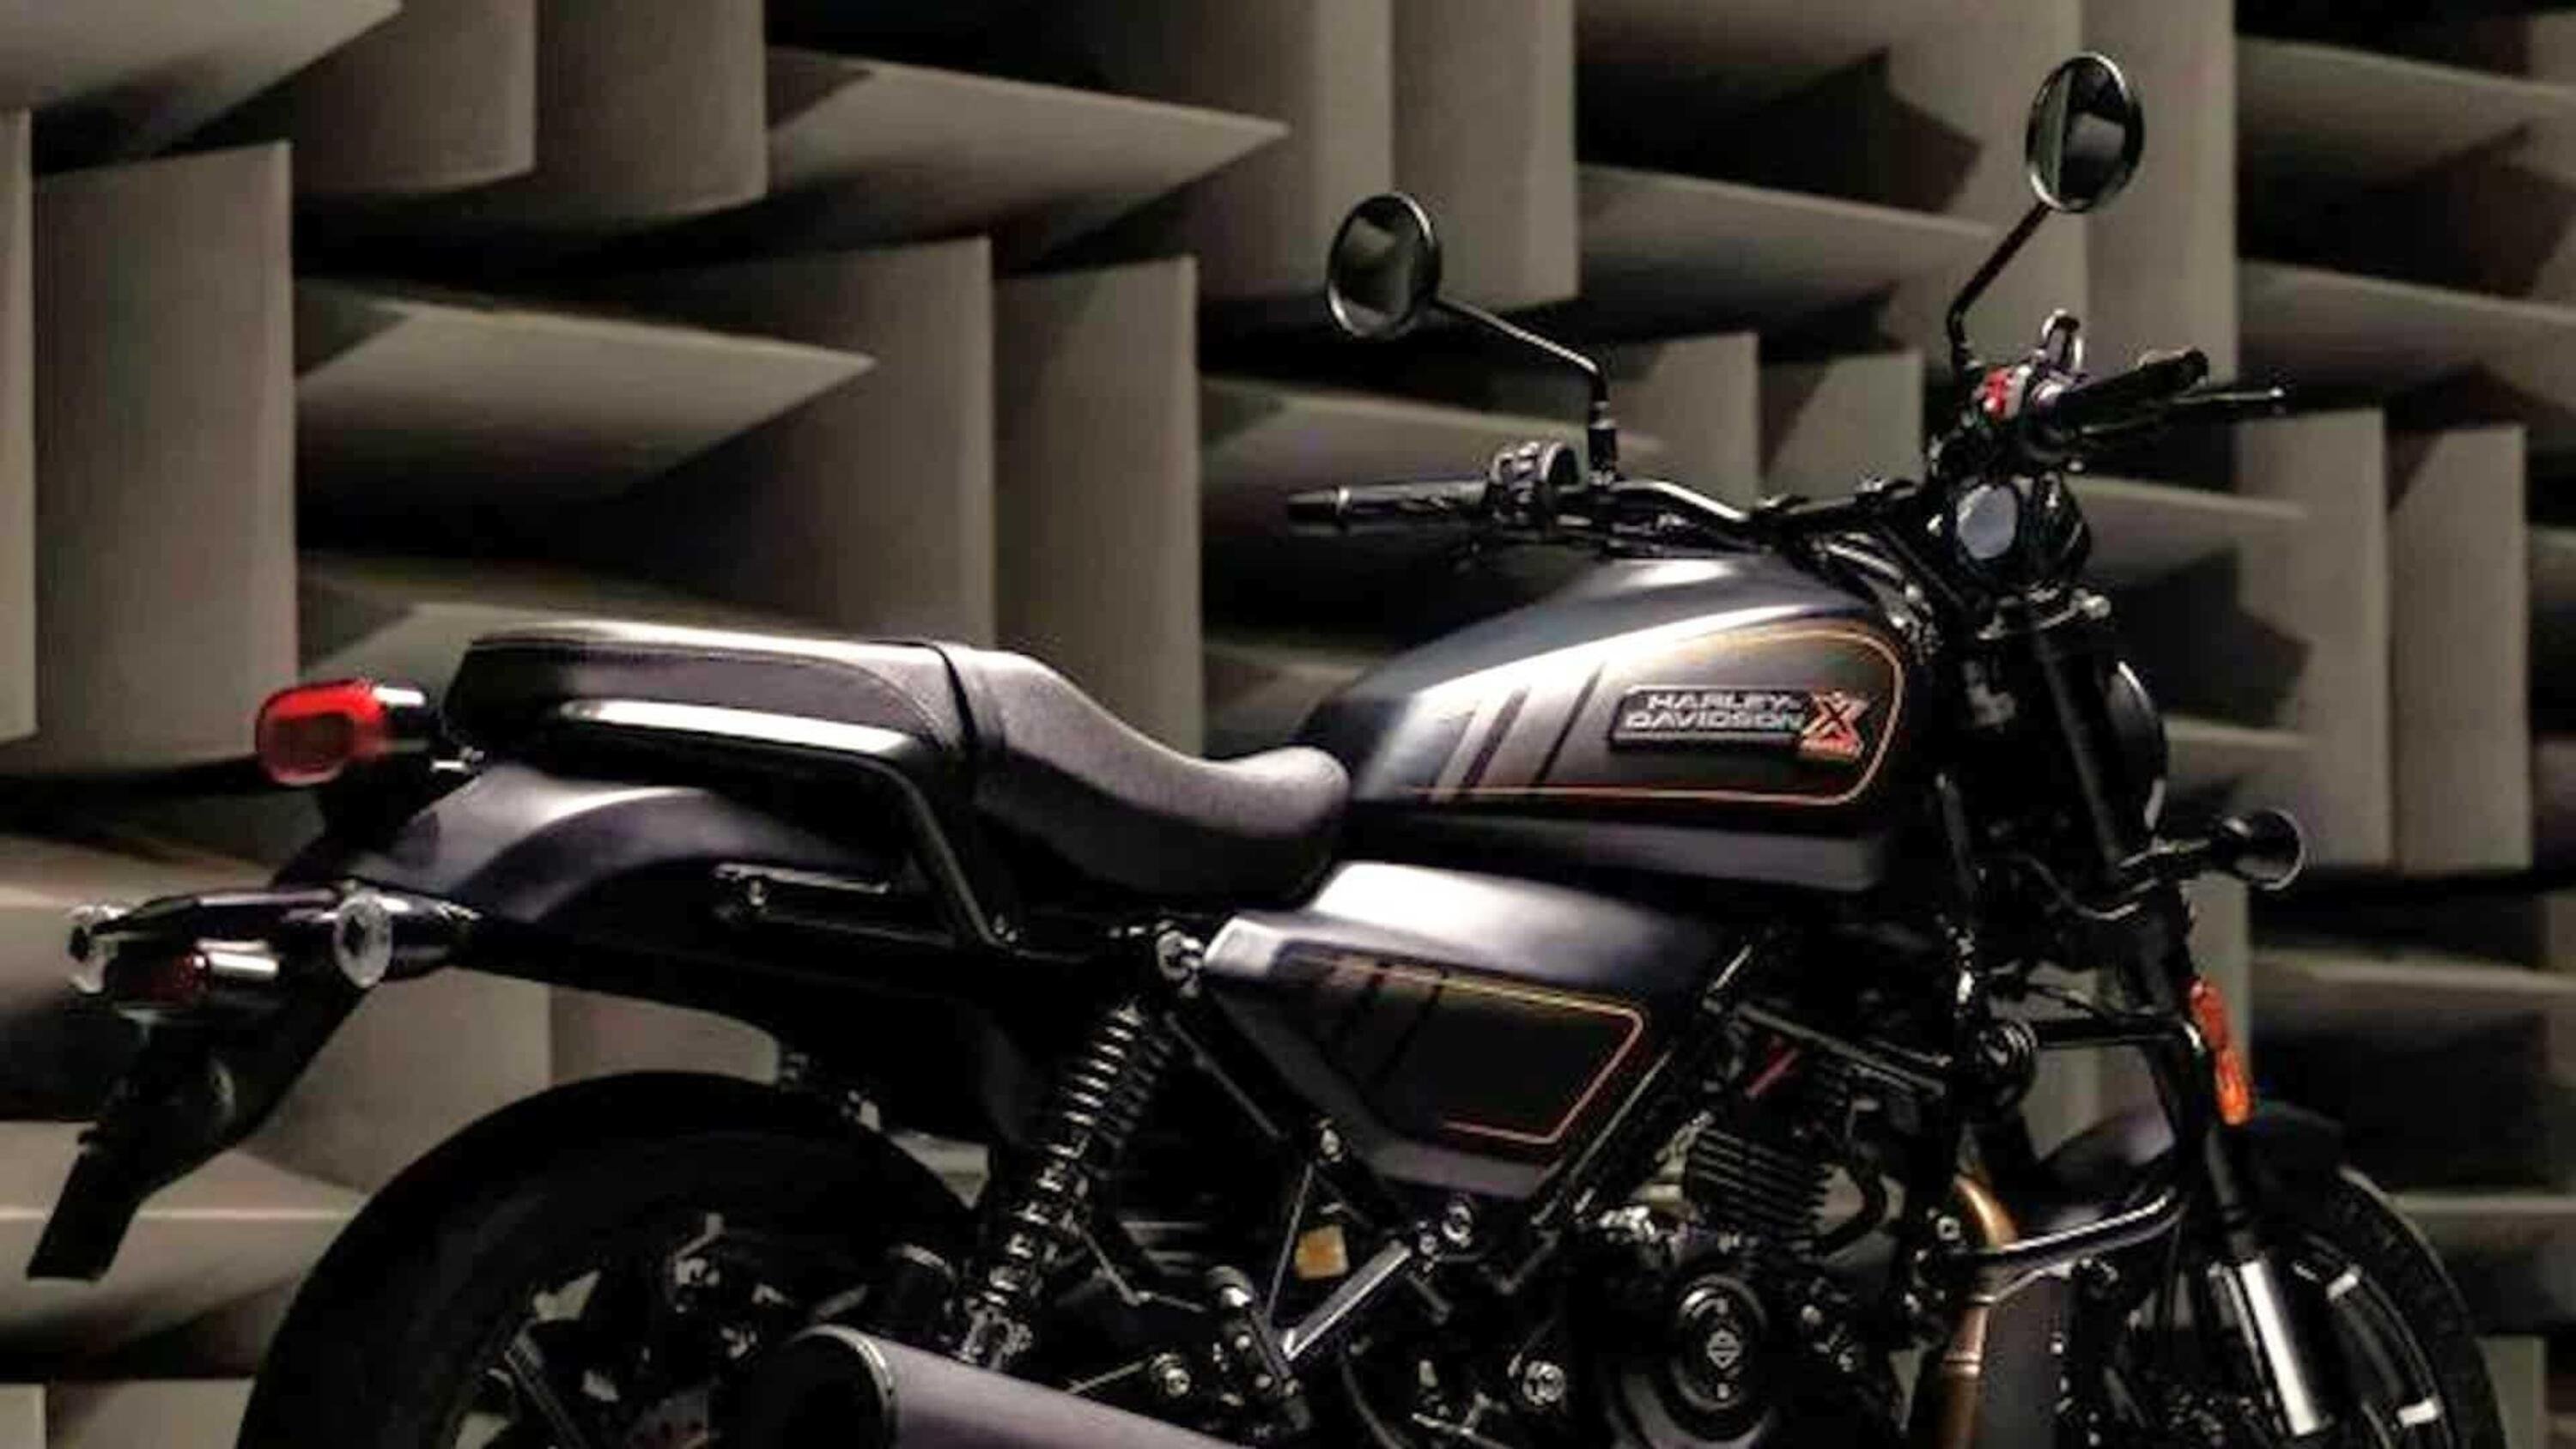 Le prime immagini della Harley Davidson fatta in India: ecco la comoda X440! [GALLERY]